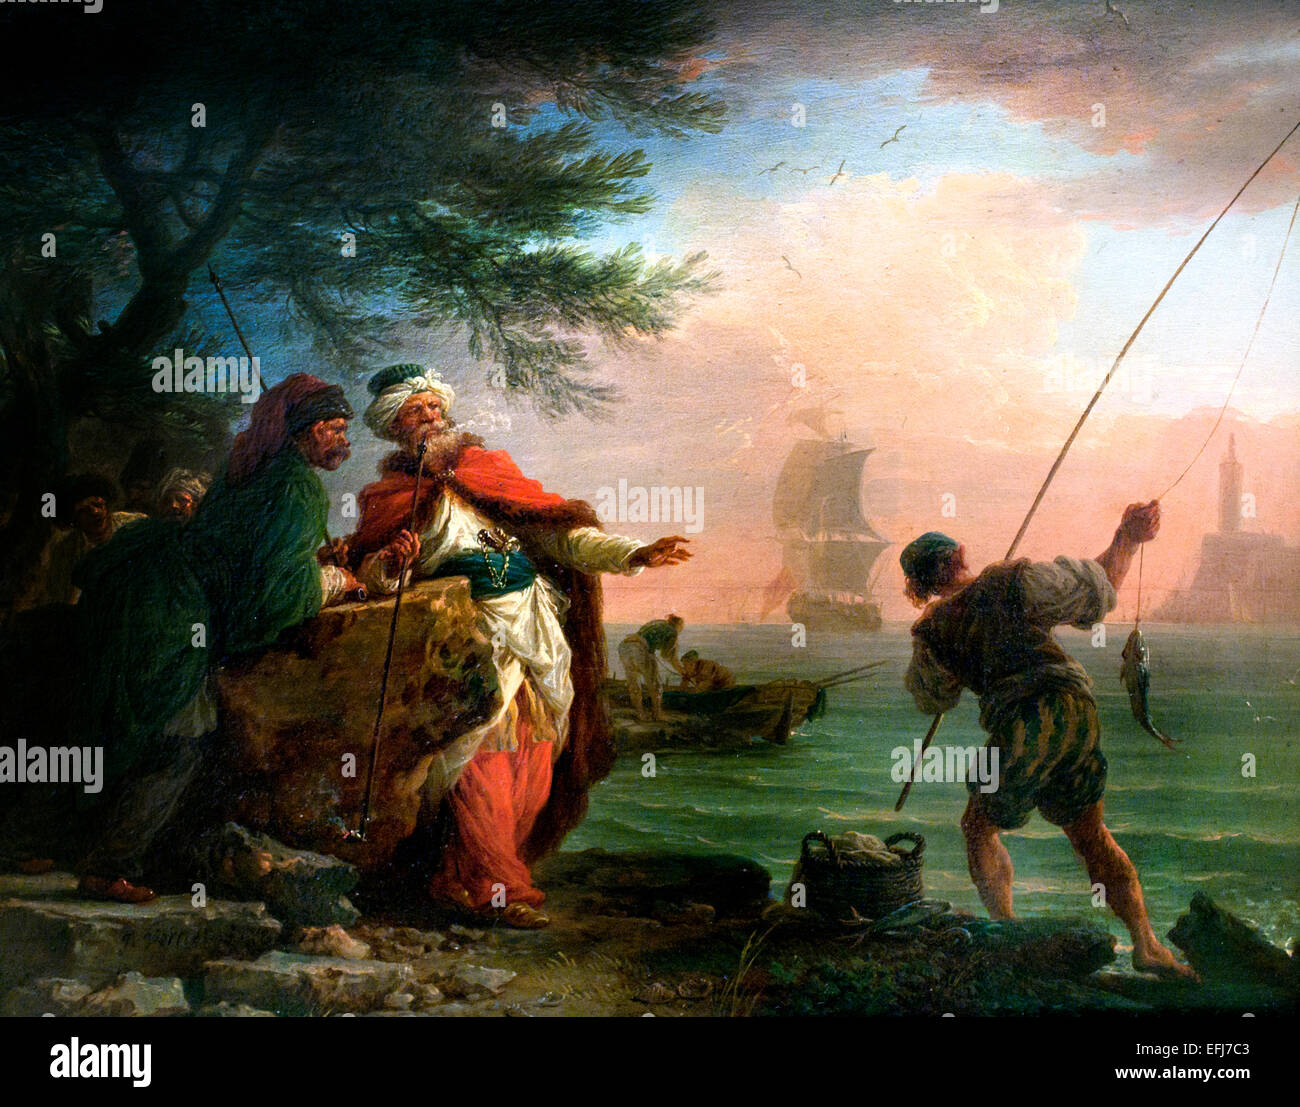 Les turcs distingués lors de la pêche sur la plage de regarder 1755 Claude Joseph Vernet 1714 -1789 peintre Français France Turquie Turk Banque D'Images